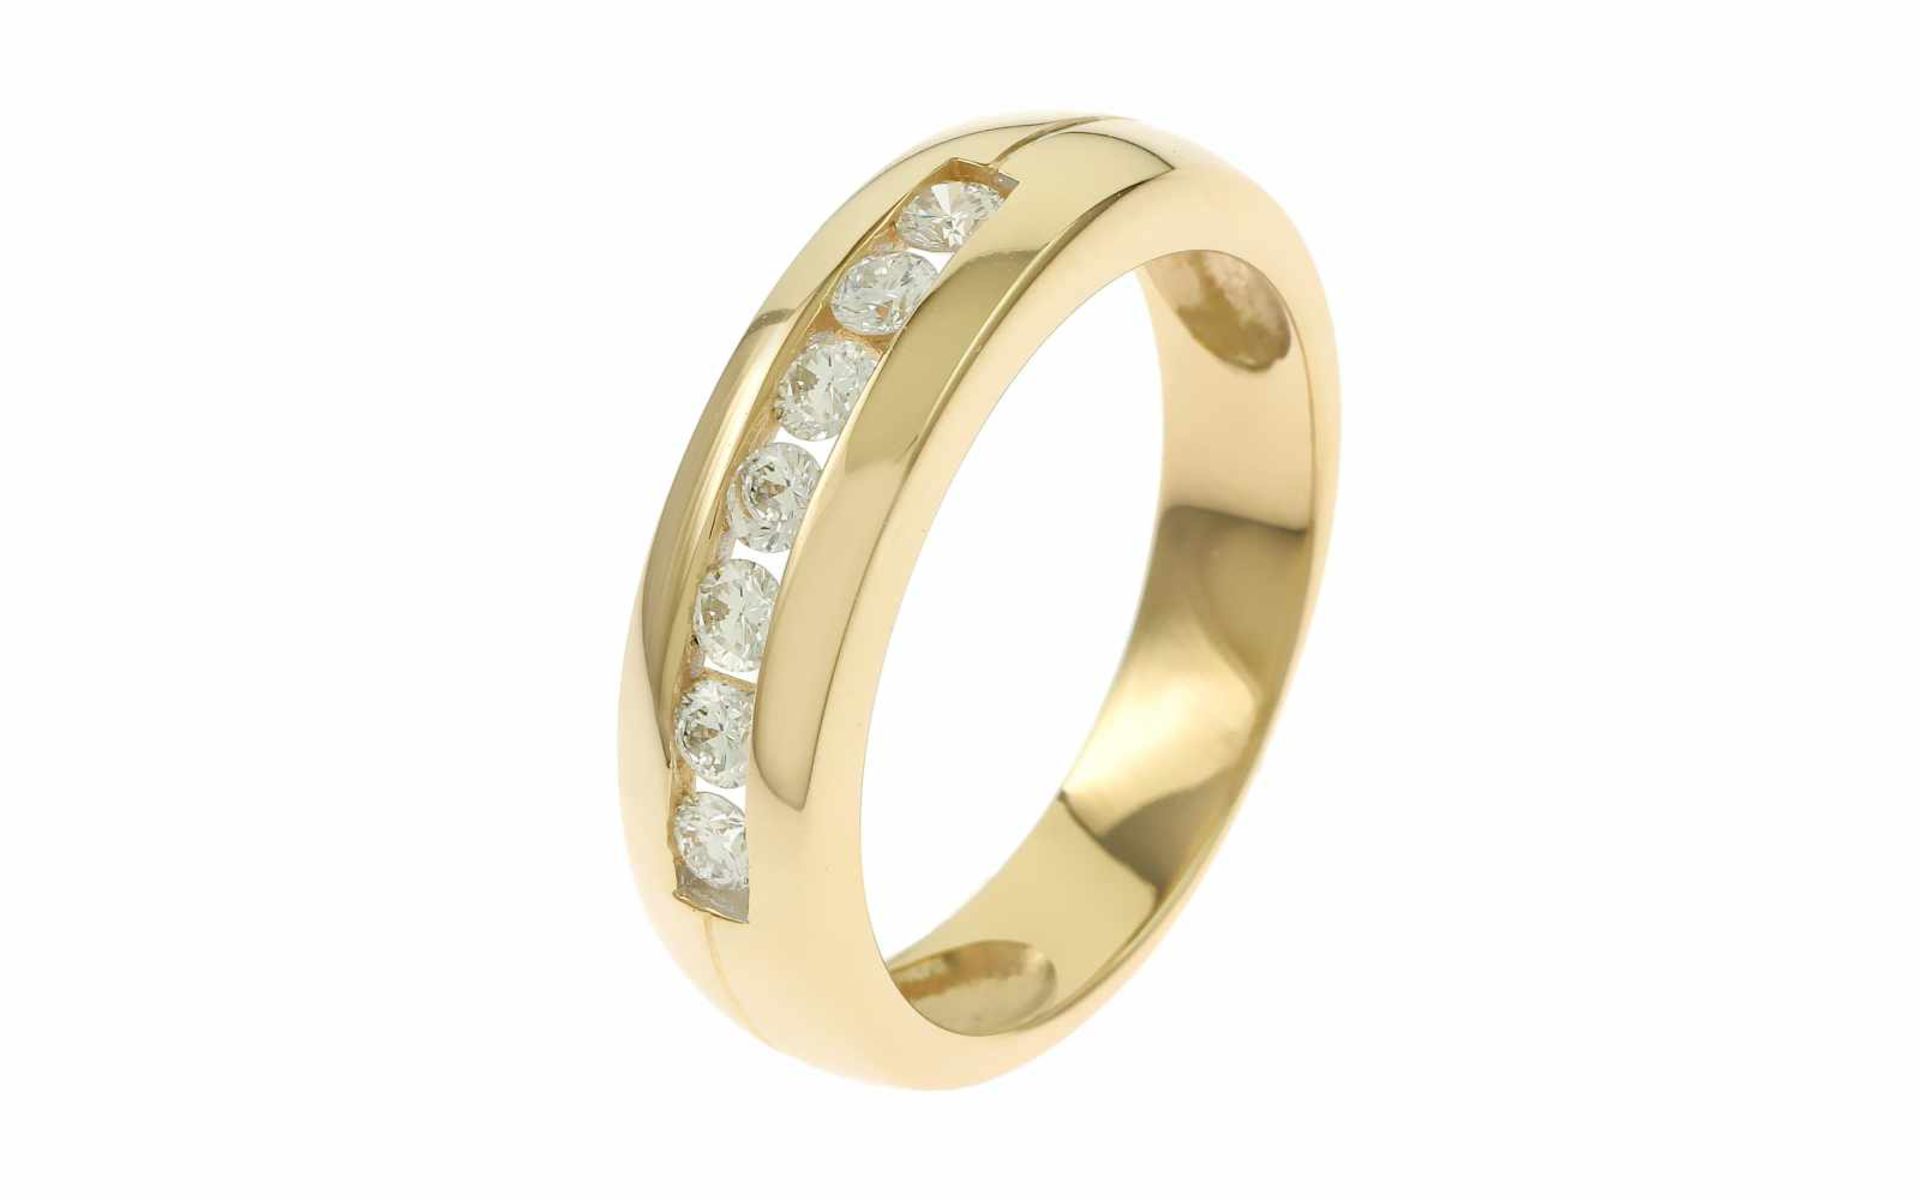 Ring mit Diamanten14K GG mit 0,35 ct. Diamanten F/vvs Brillantschliff, Ringgröße 58, Total 5,30 g